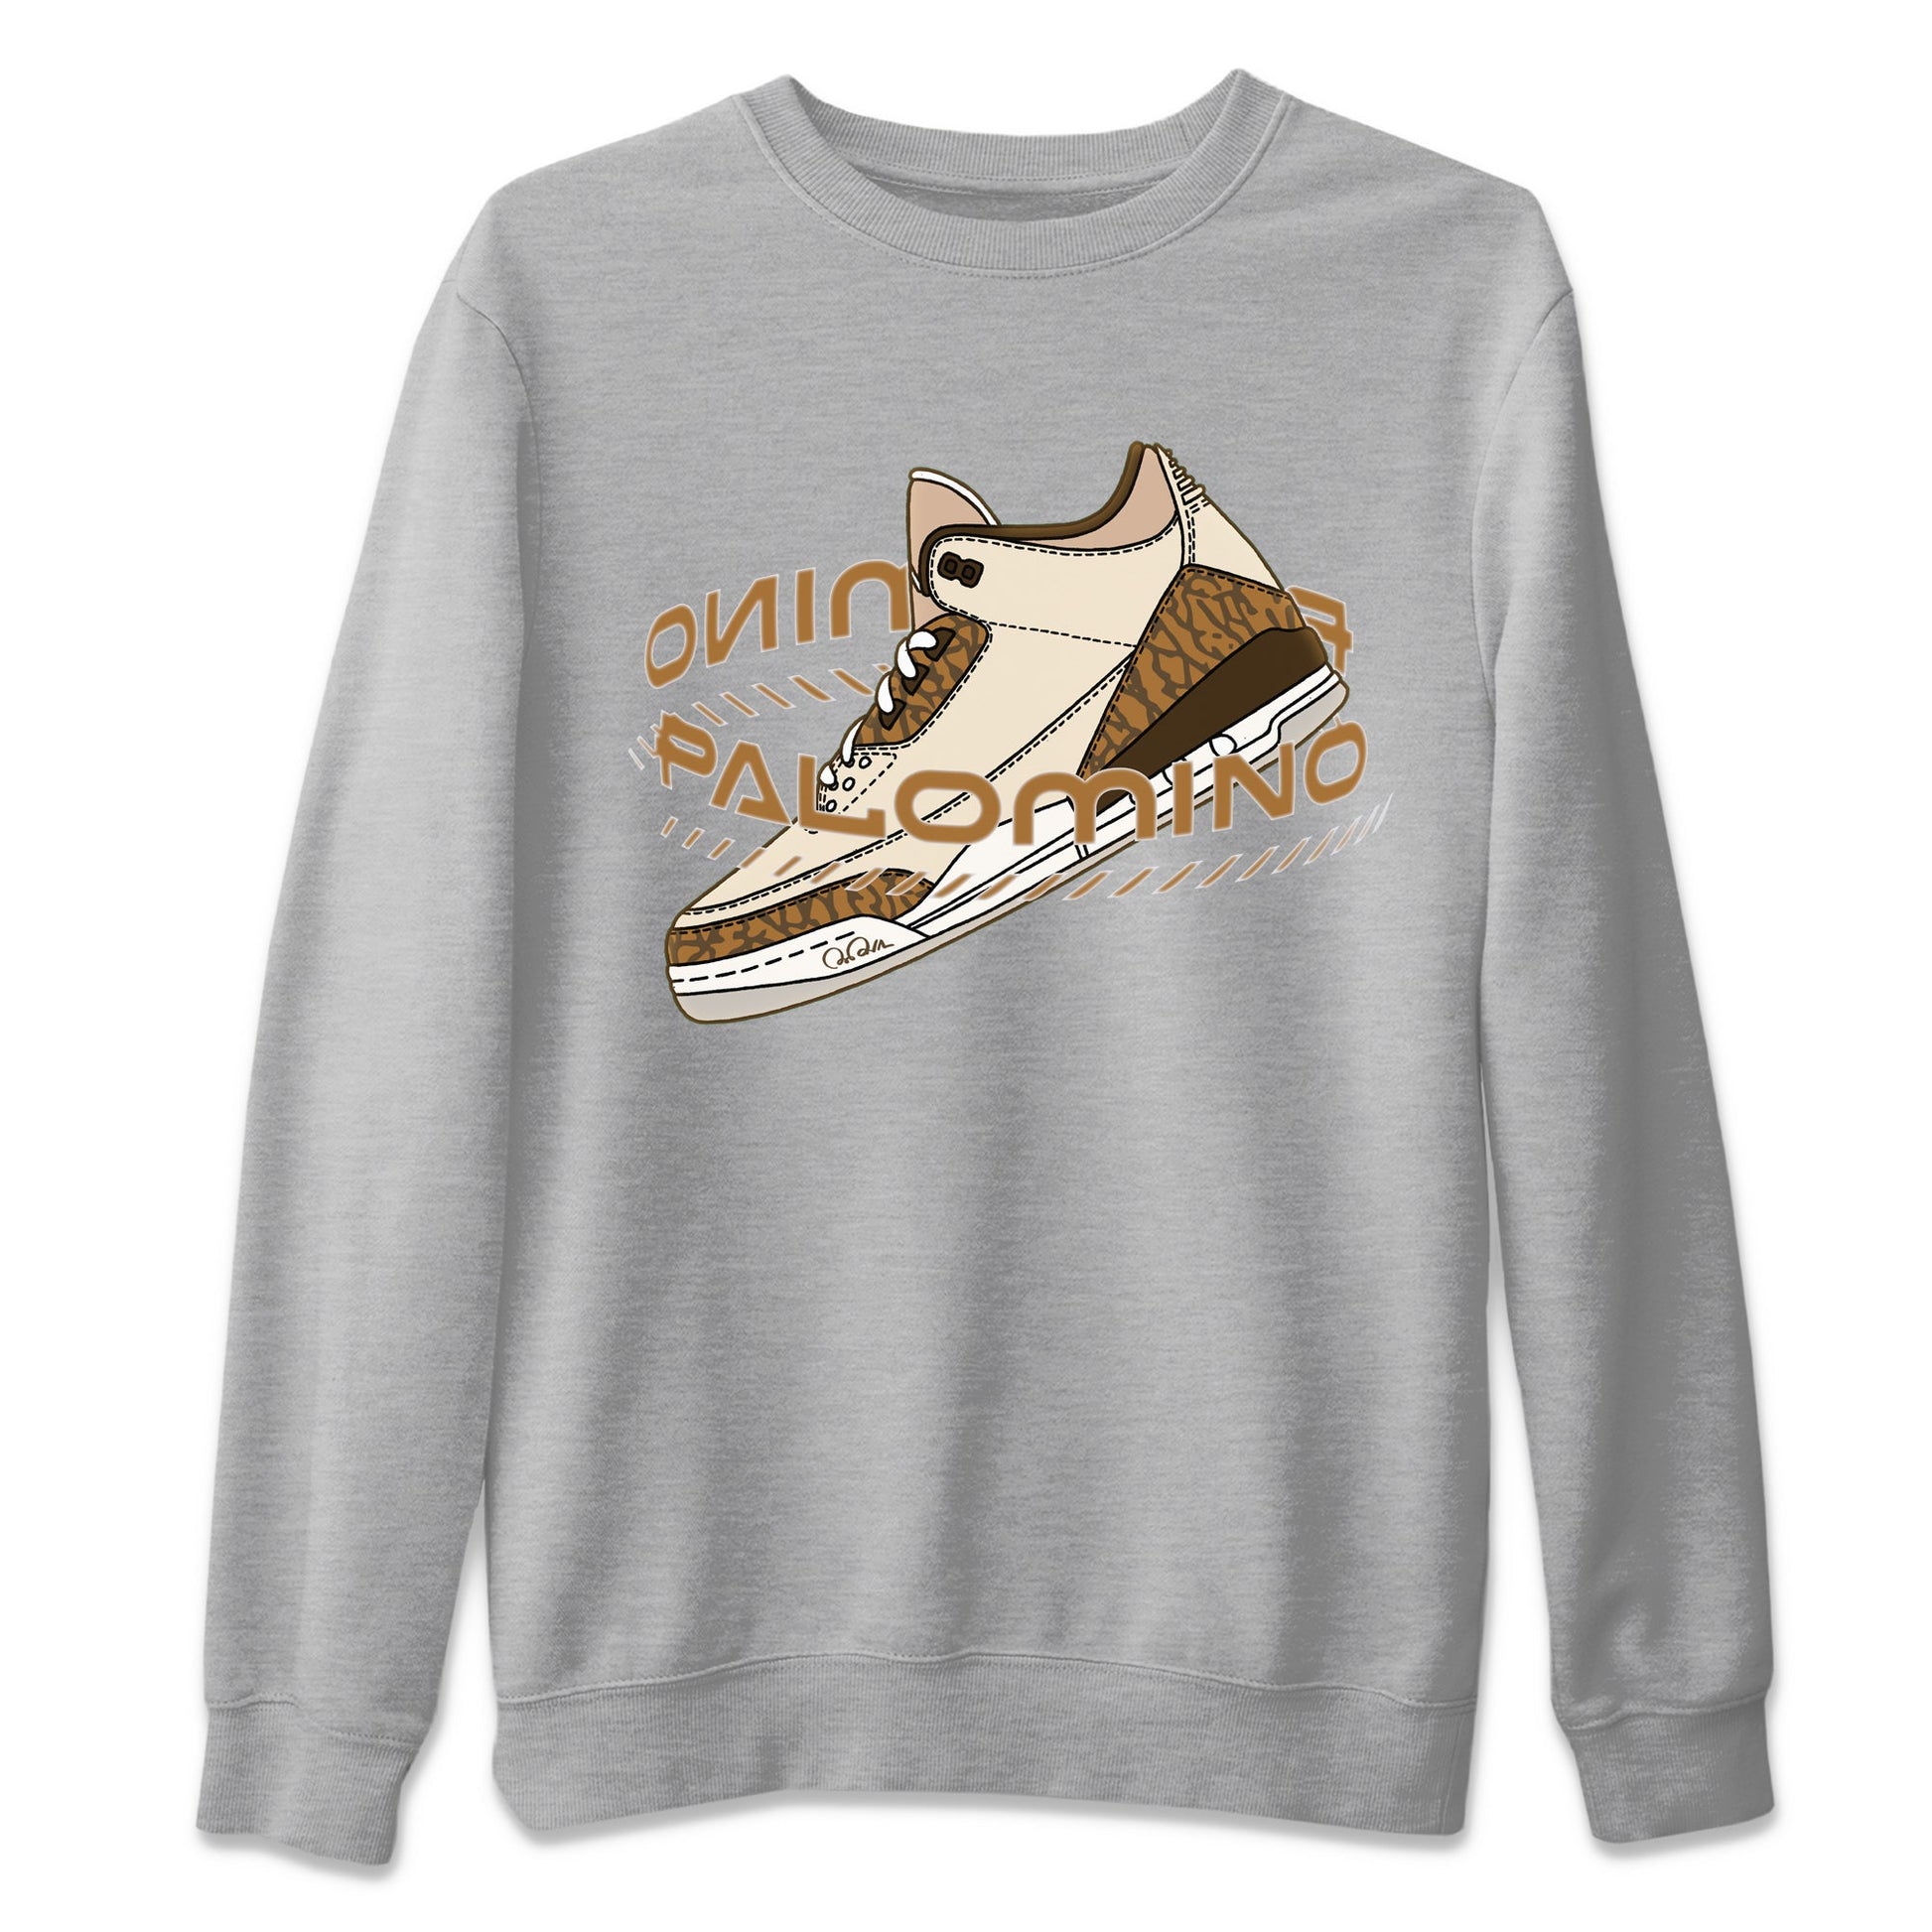 Air Jordan 3 Palomino Sneaker Match Tees Warping Space Sneaker Tees AJ3 Palomino Sneaker Release Tees Unisex Shirts Heather Grey 2